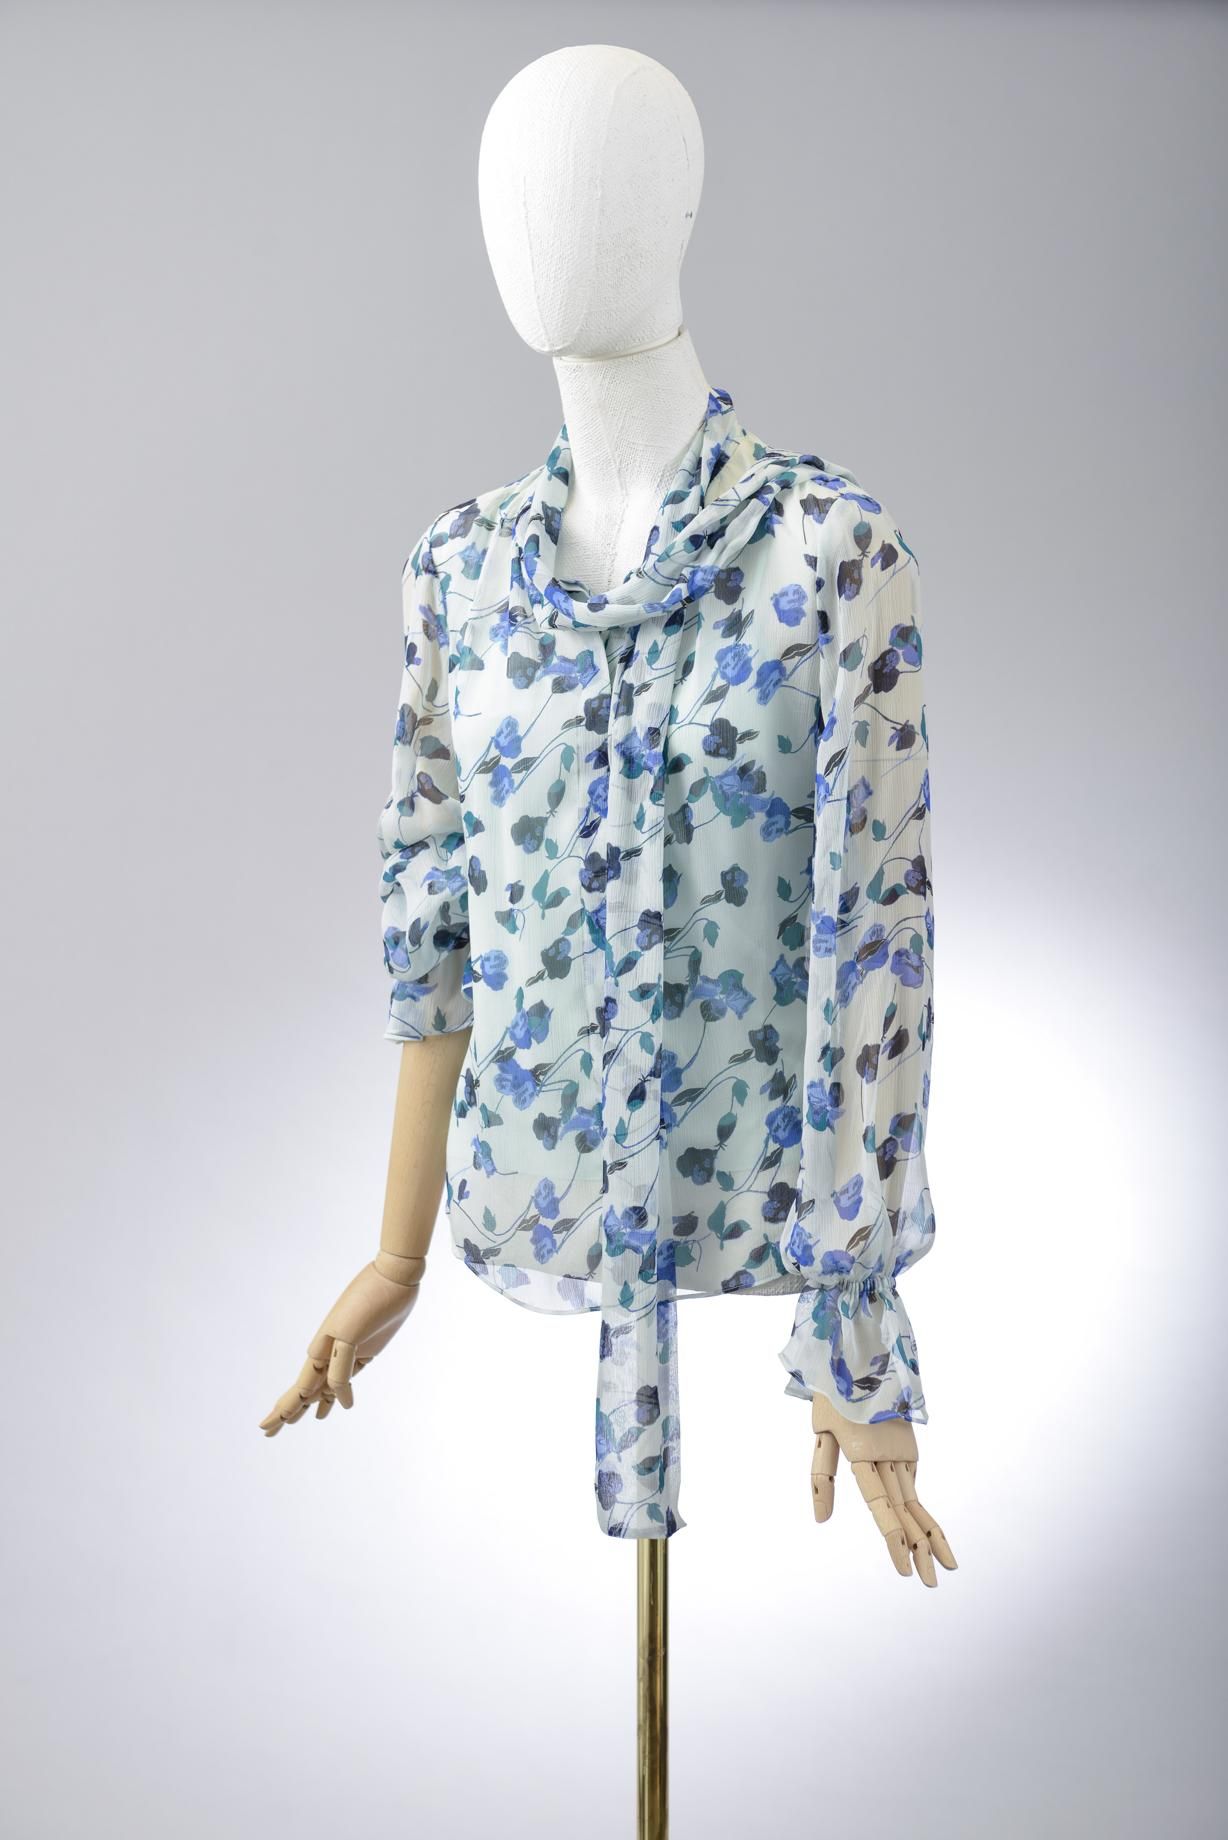 Null *尺寸XS DVF - Diane Von Fürstenberg

套装包括。

-丝质雪纺上衣，型号为 "DVF Tina"，上面印有名为 "Fl&hellip;